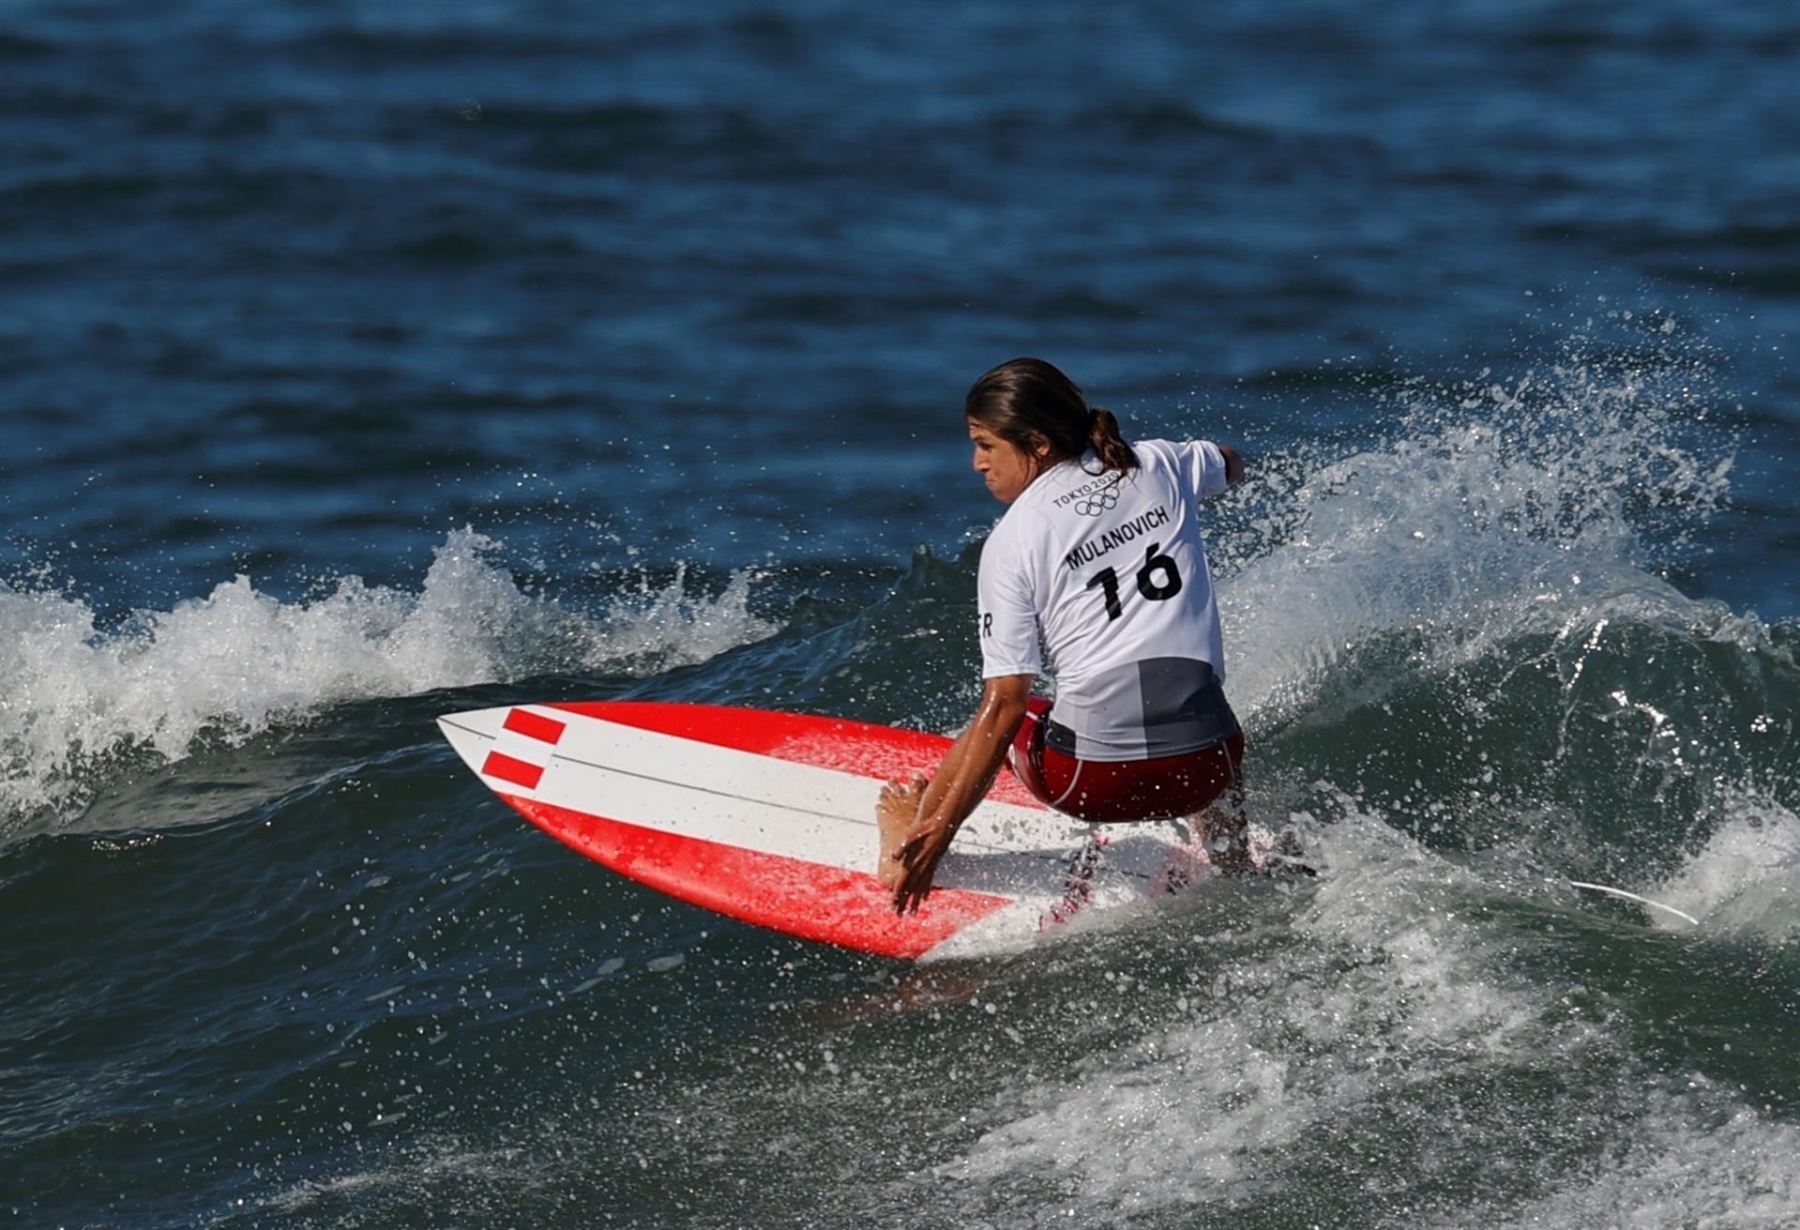 Sofía Mulánovich compite esta noche con la opción de meterse en la final del surf olímpico